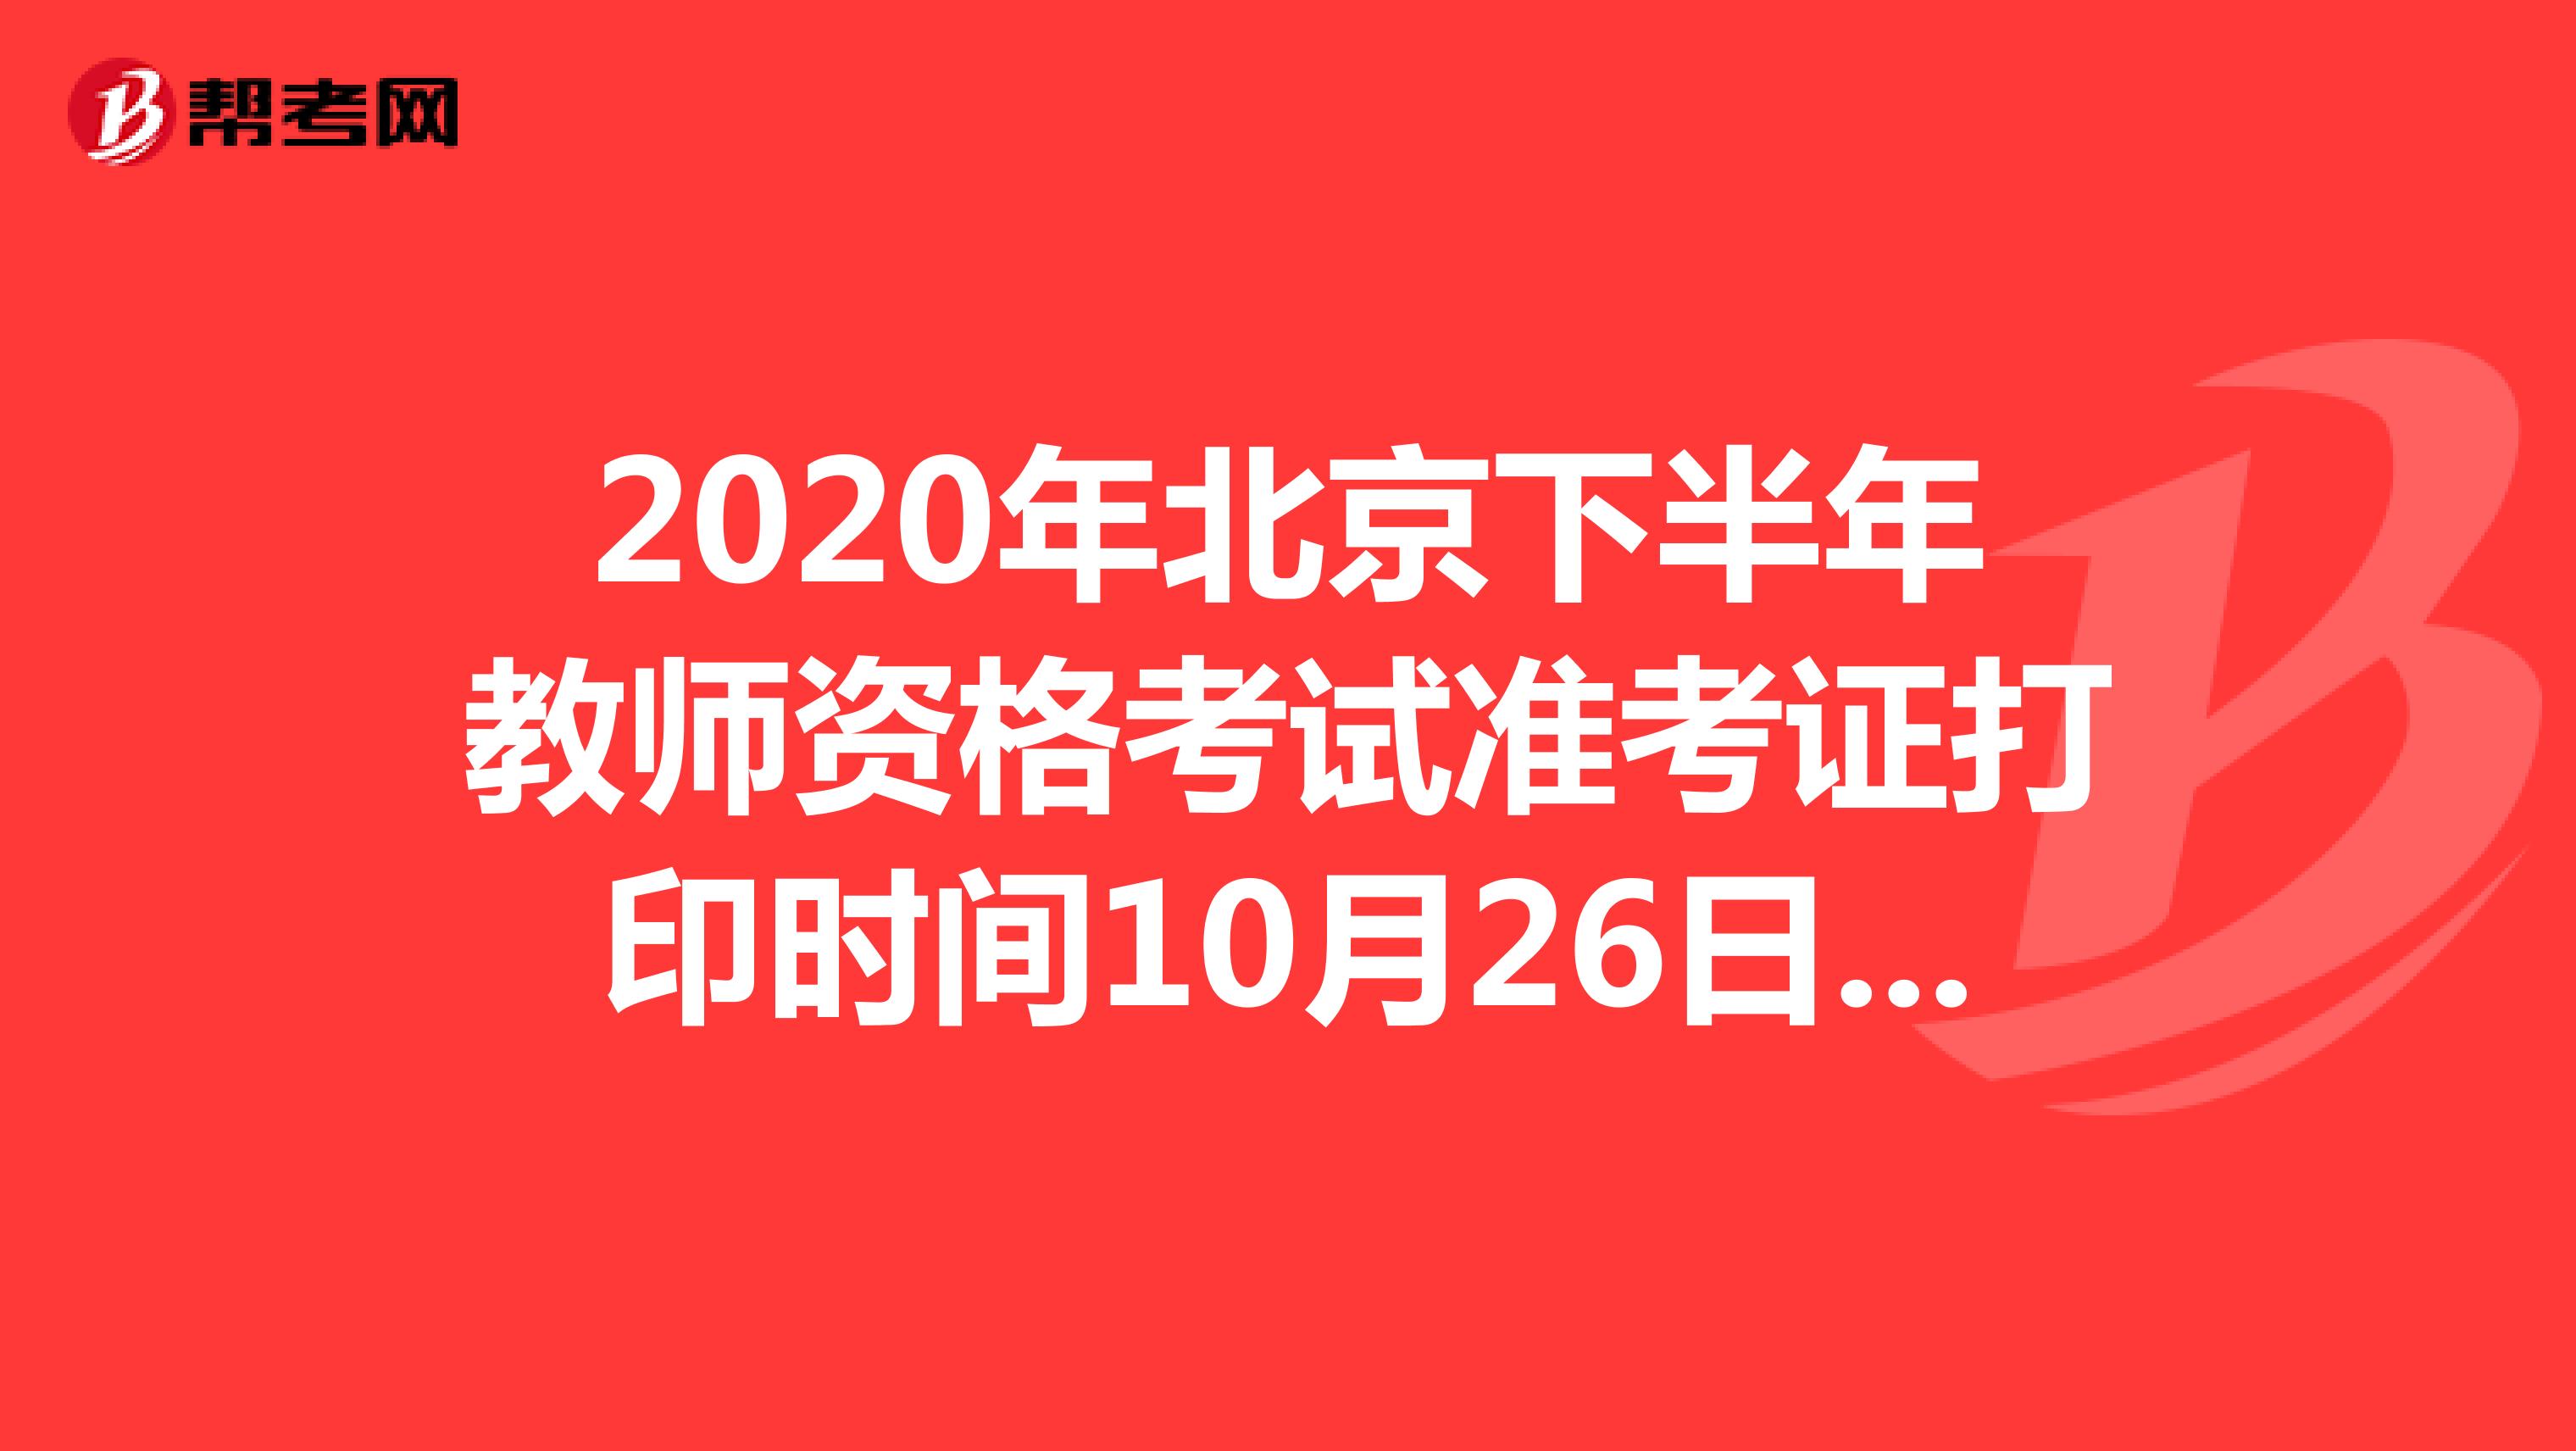 2020年北京下半年教师资格考试准考证打印时间10月26日-31日